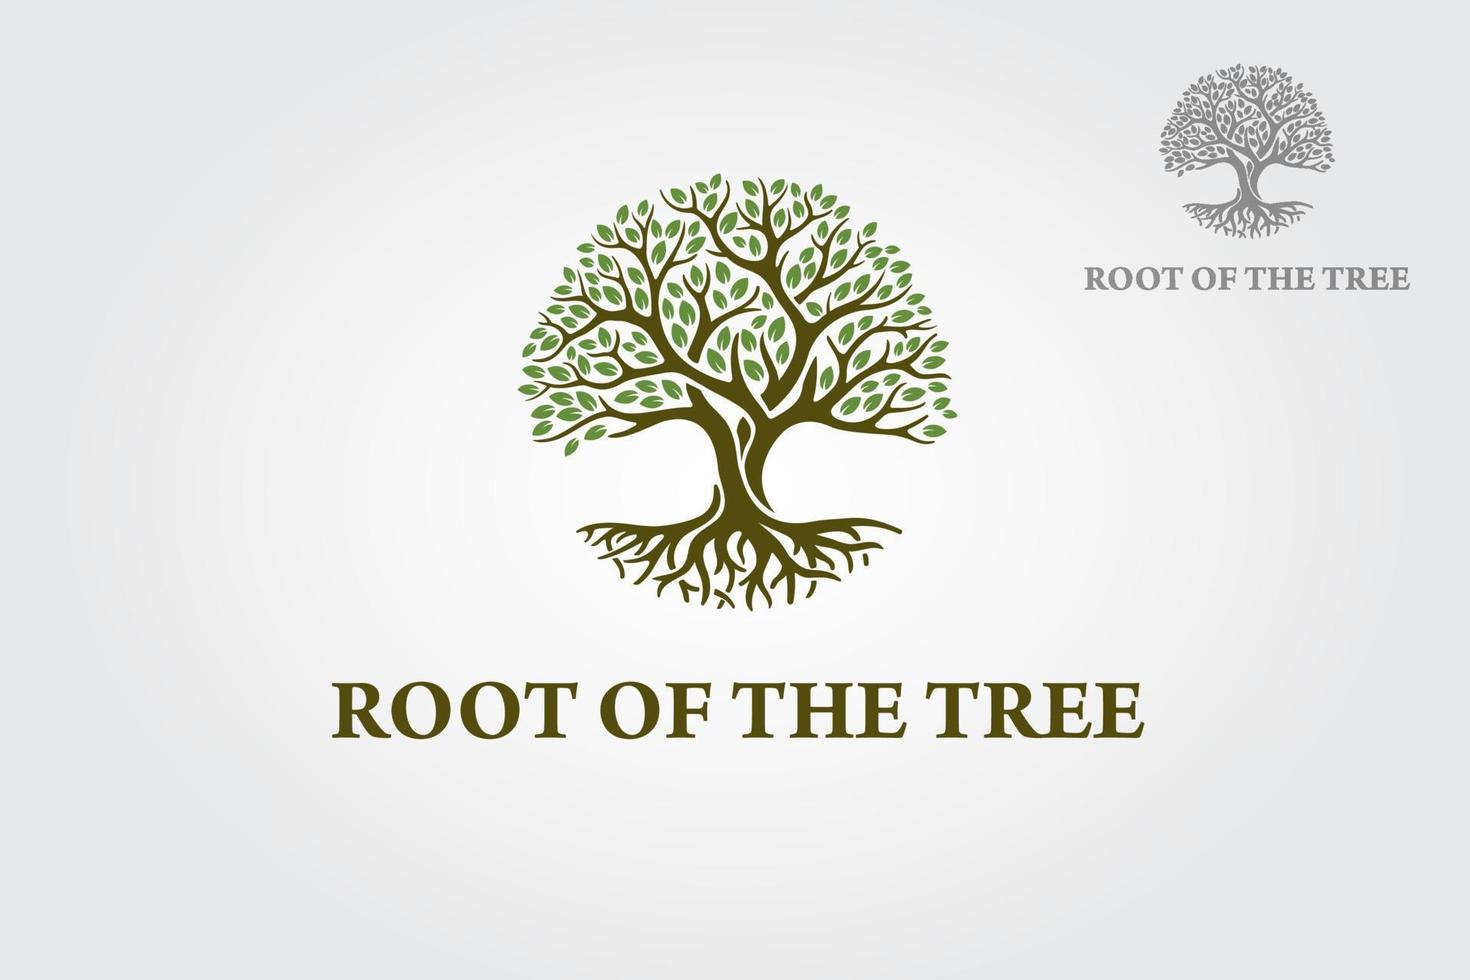 roten av trädet vektor logotyp illustration. vektorlogotypen detta vackra träd är en symbol för liv, skönhet, tillväxt, styrka och god hälsa.